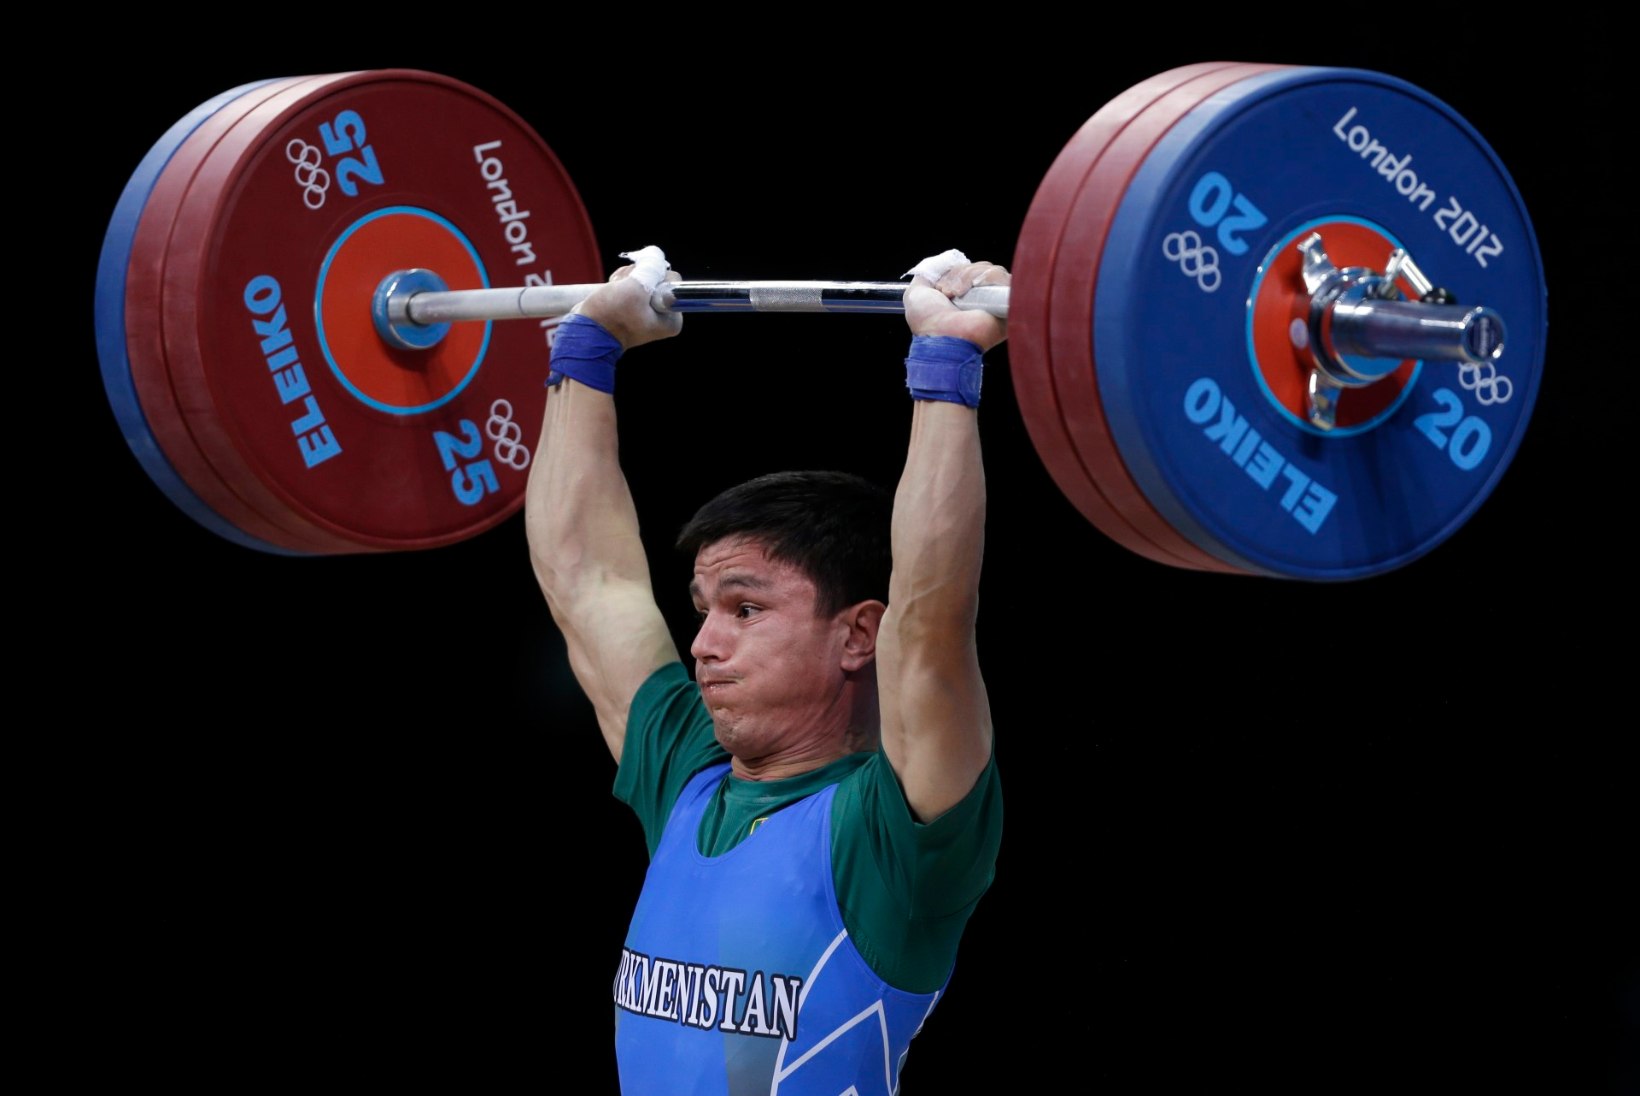 Võistluskeeld Türkmenistani moodi: dopingupatune tõstja hakkas keelu kiuste koondise treeneriks  